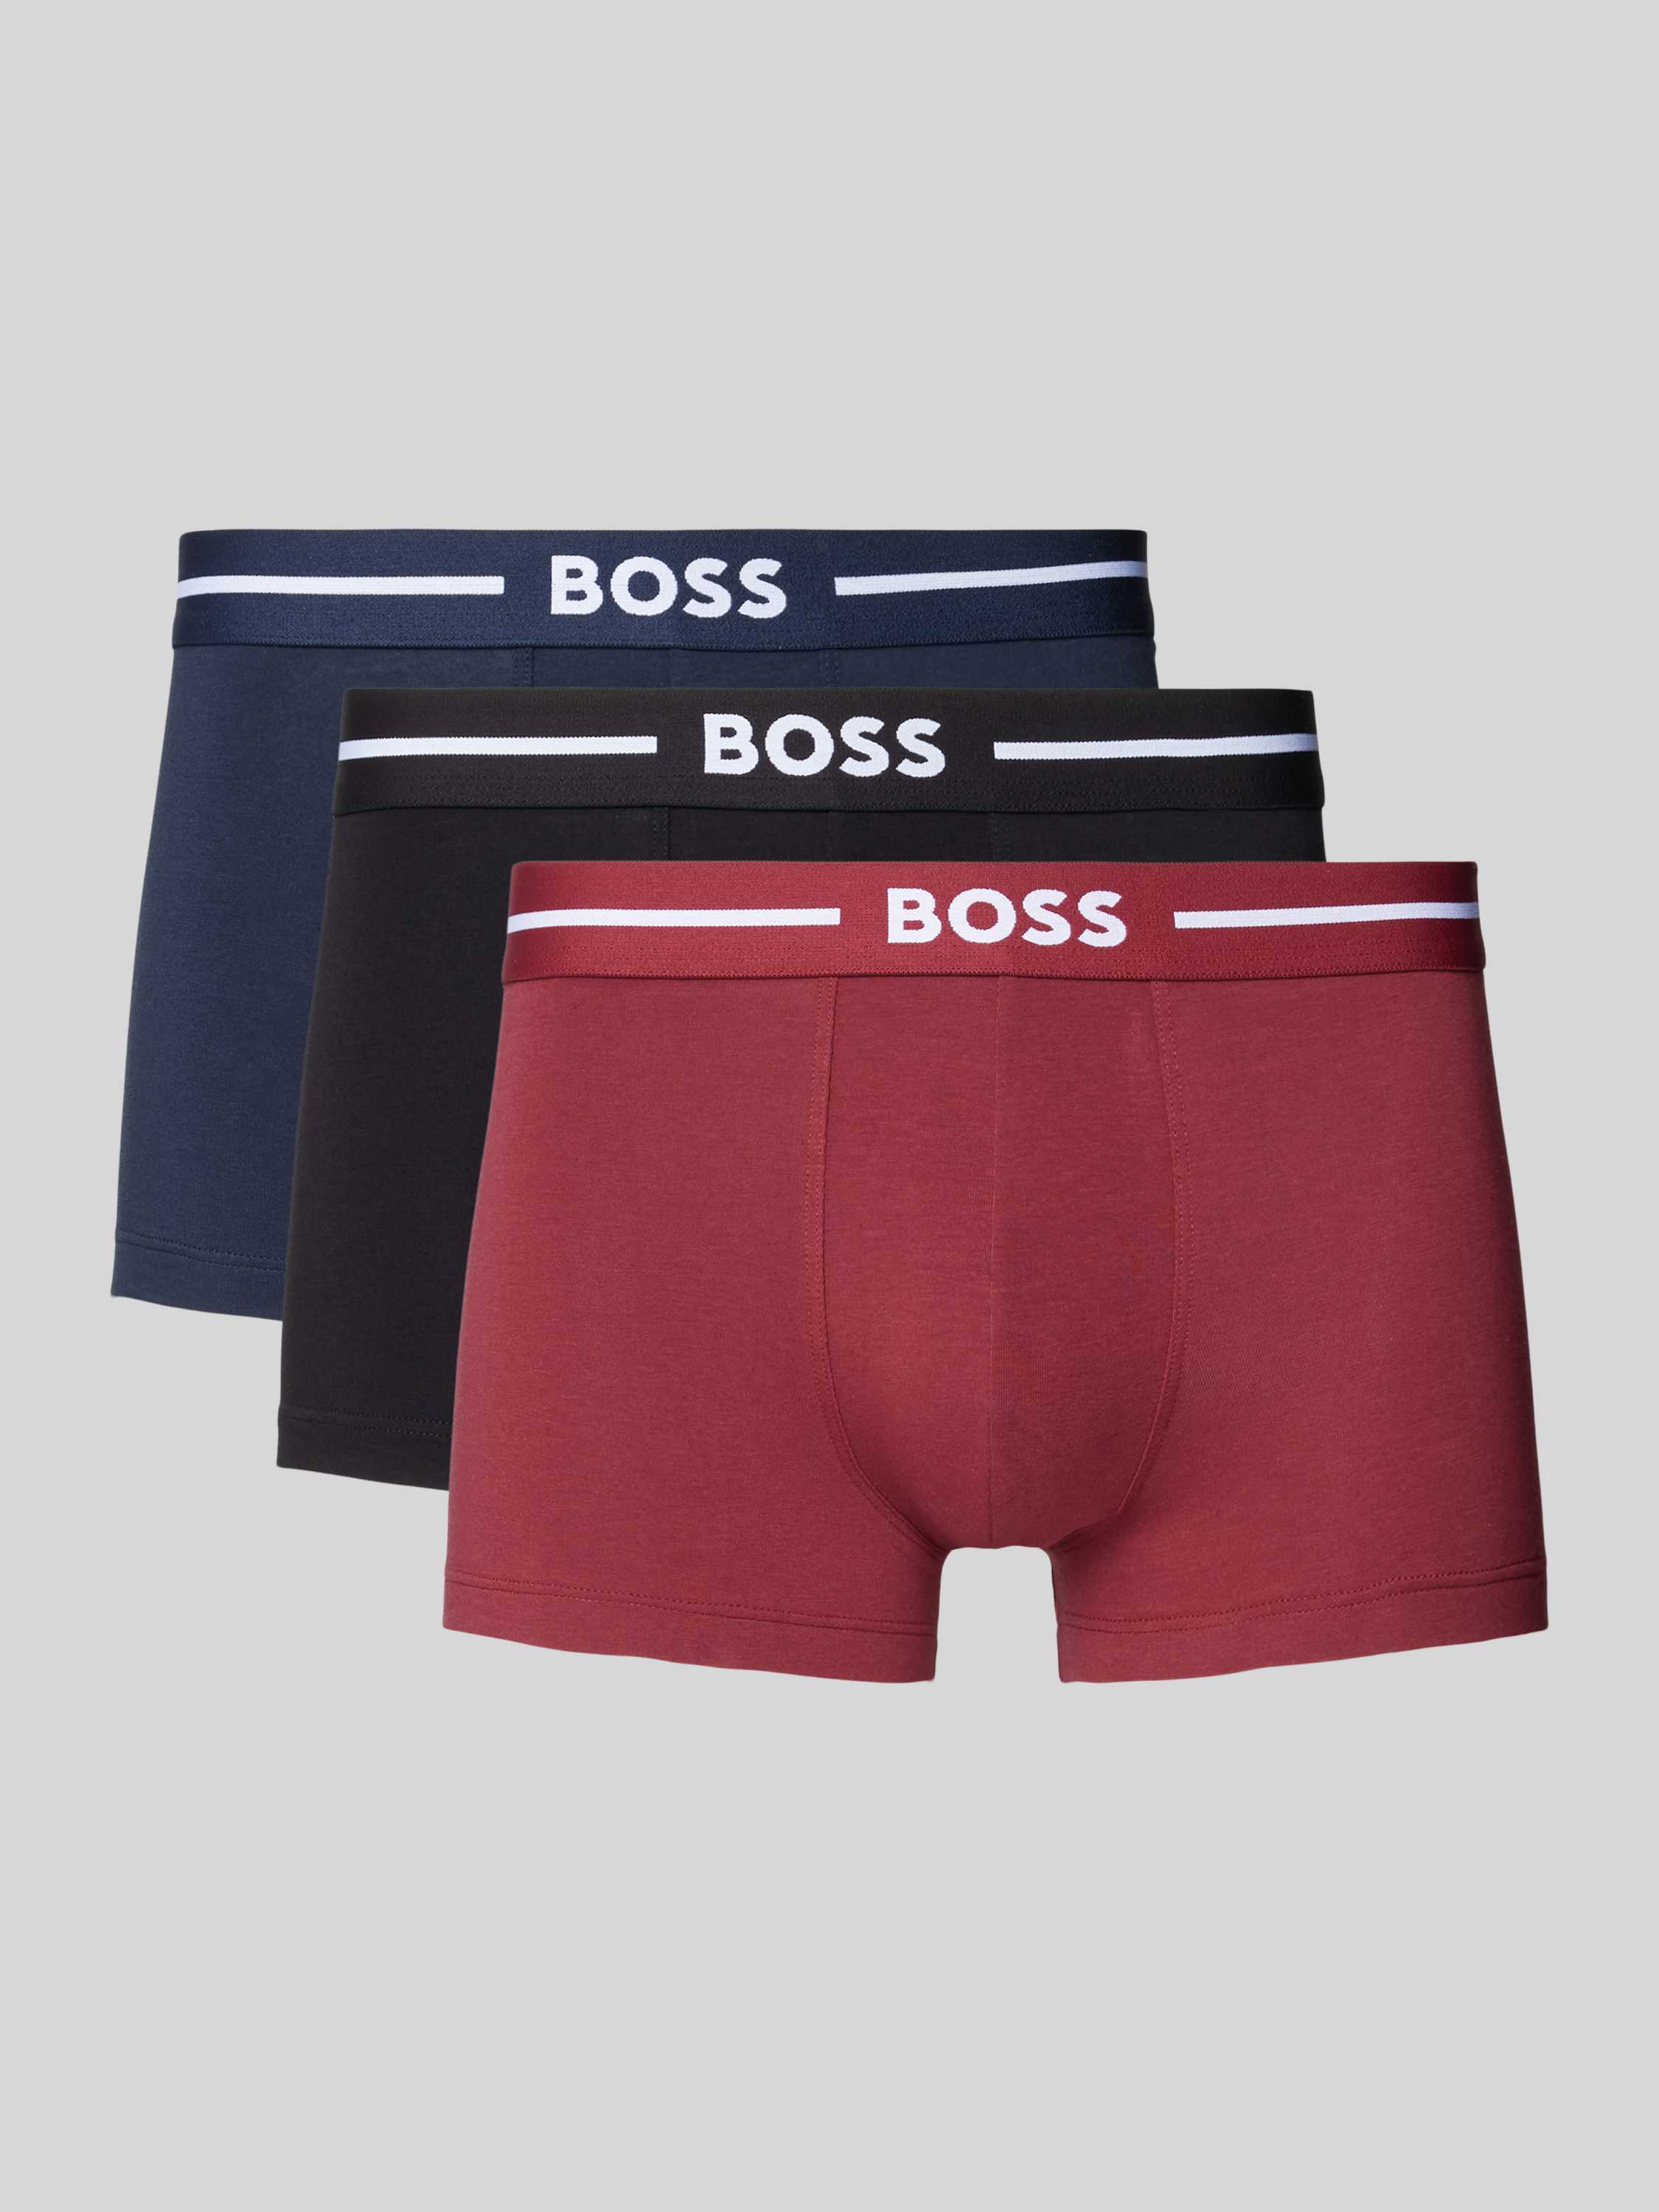 Boss Boxershort met elastische band in een set van 3 stuks